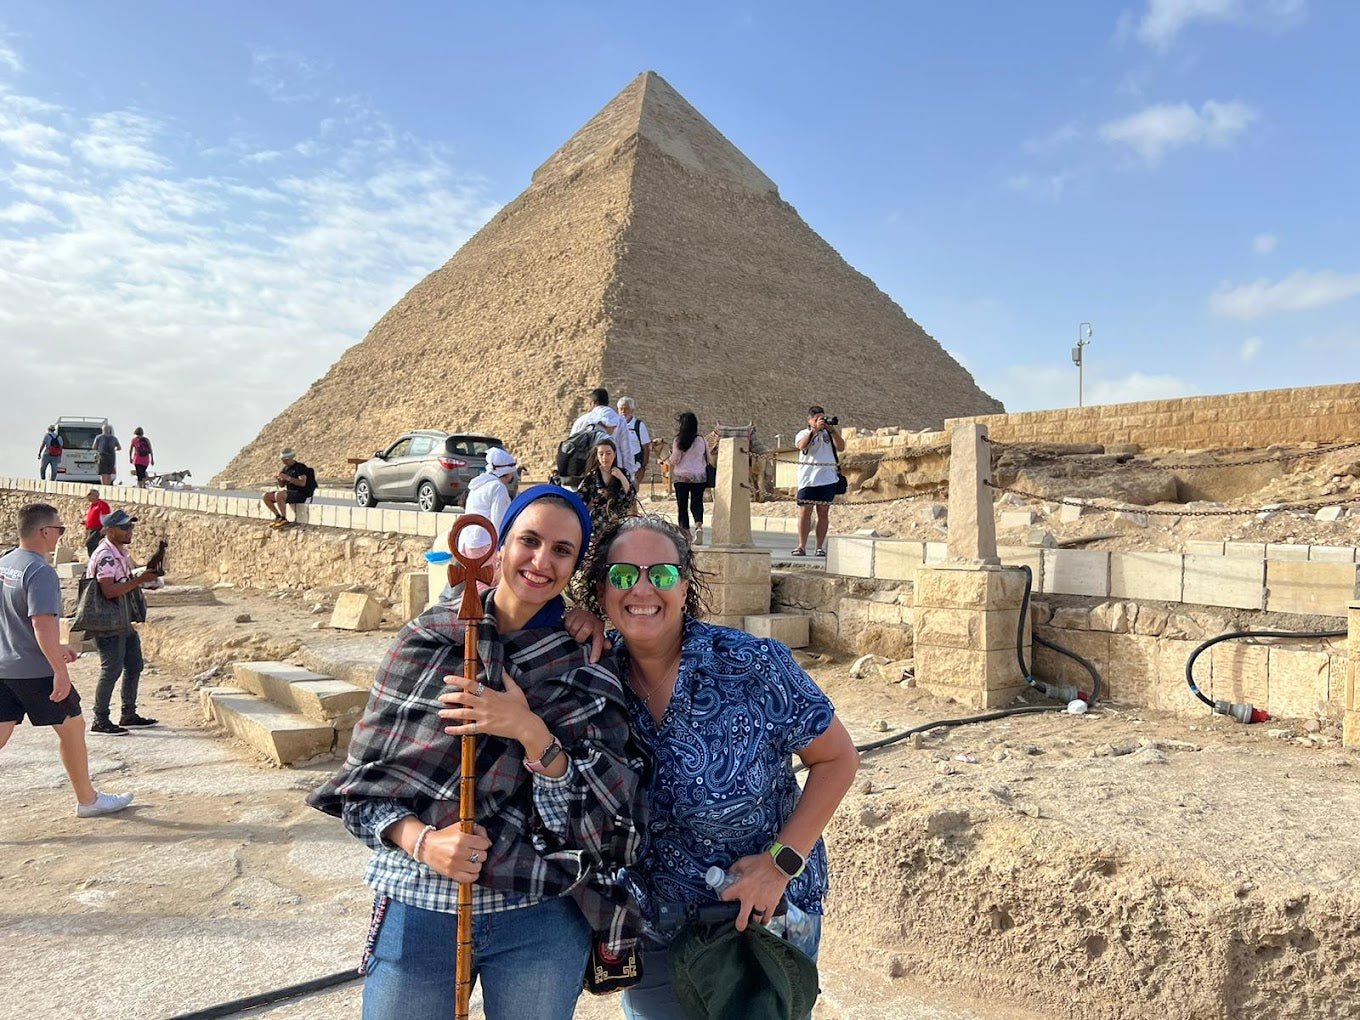 Gizeh an einem Tag: Pyramiden von Gizeh, Sphinx, Sakkara und GEM-Besuch